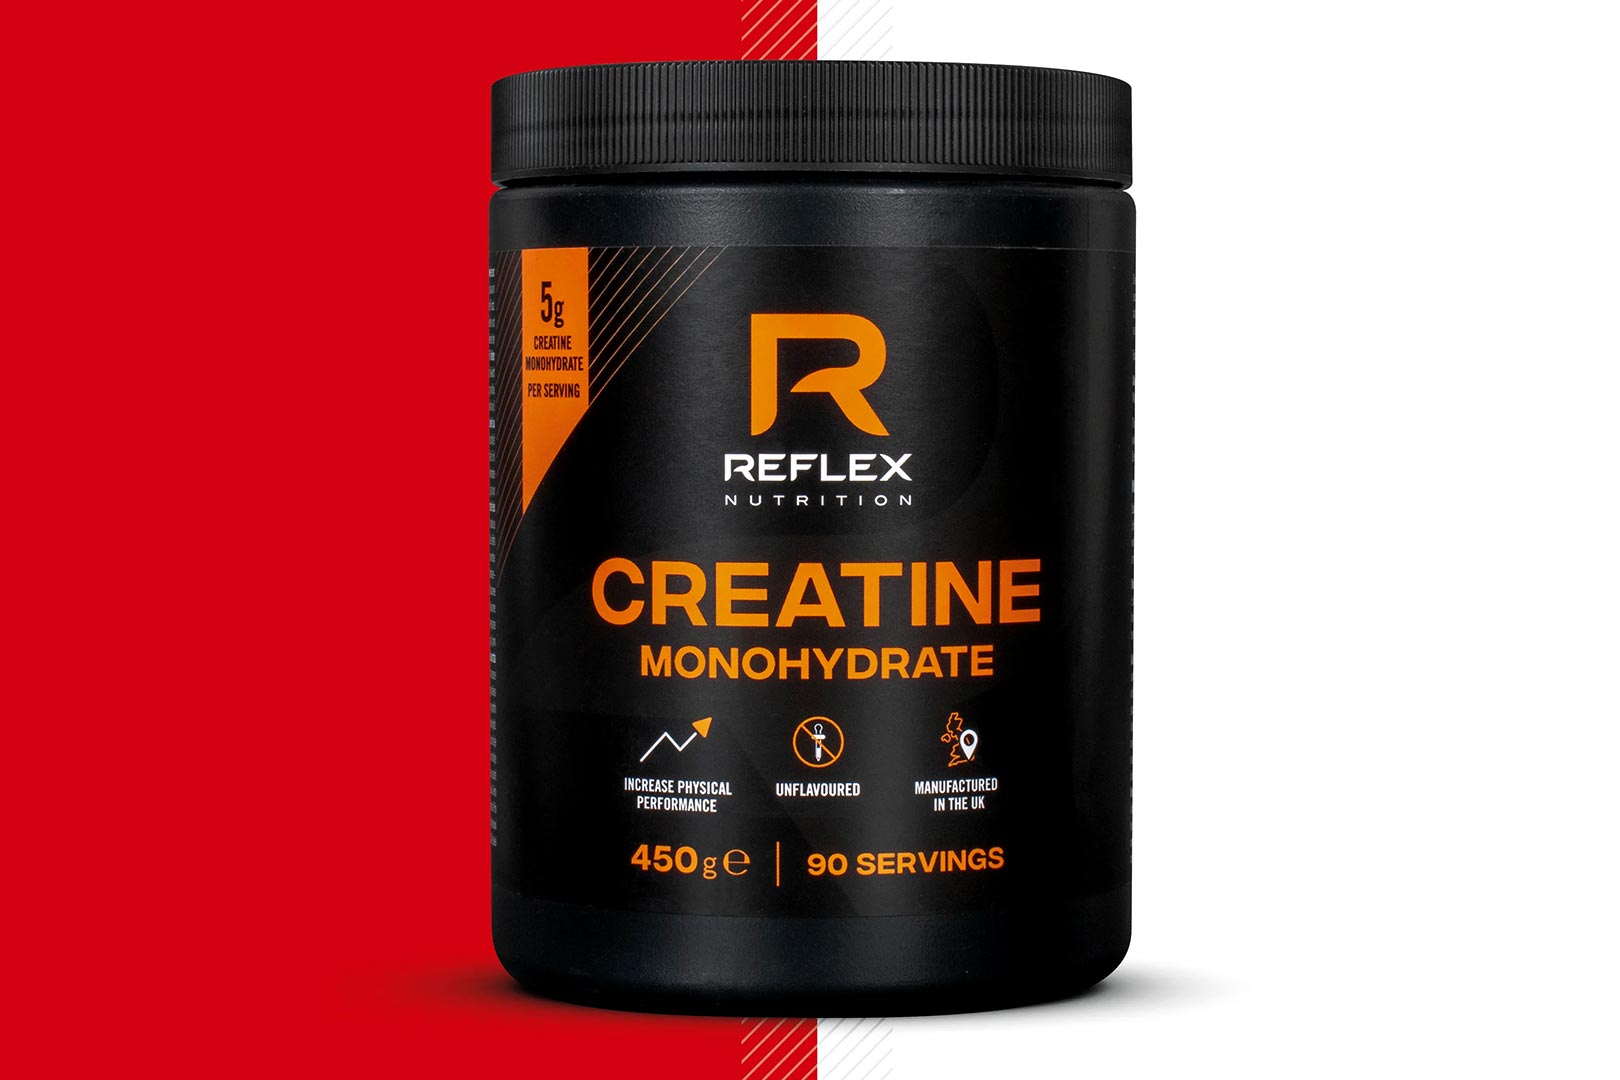 Reflex Nutrition Creatine Monohydrate